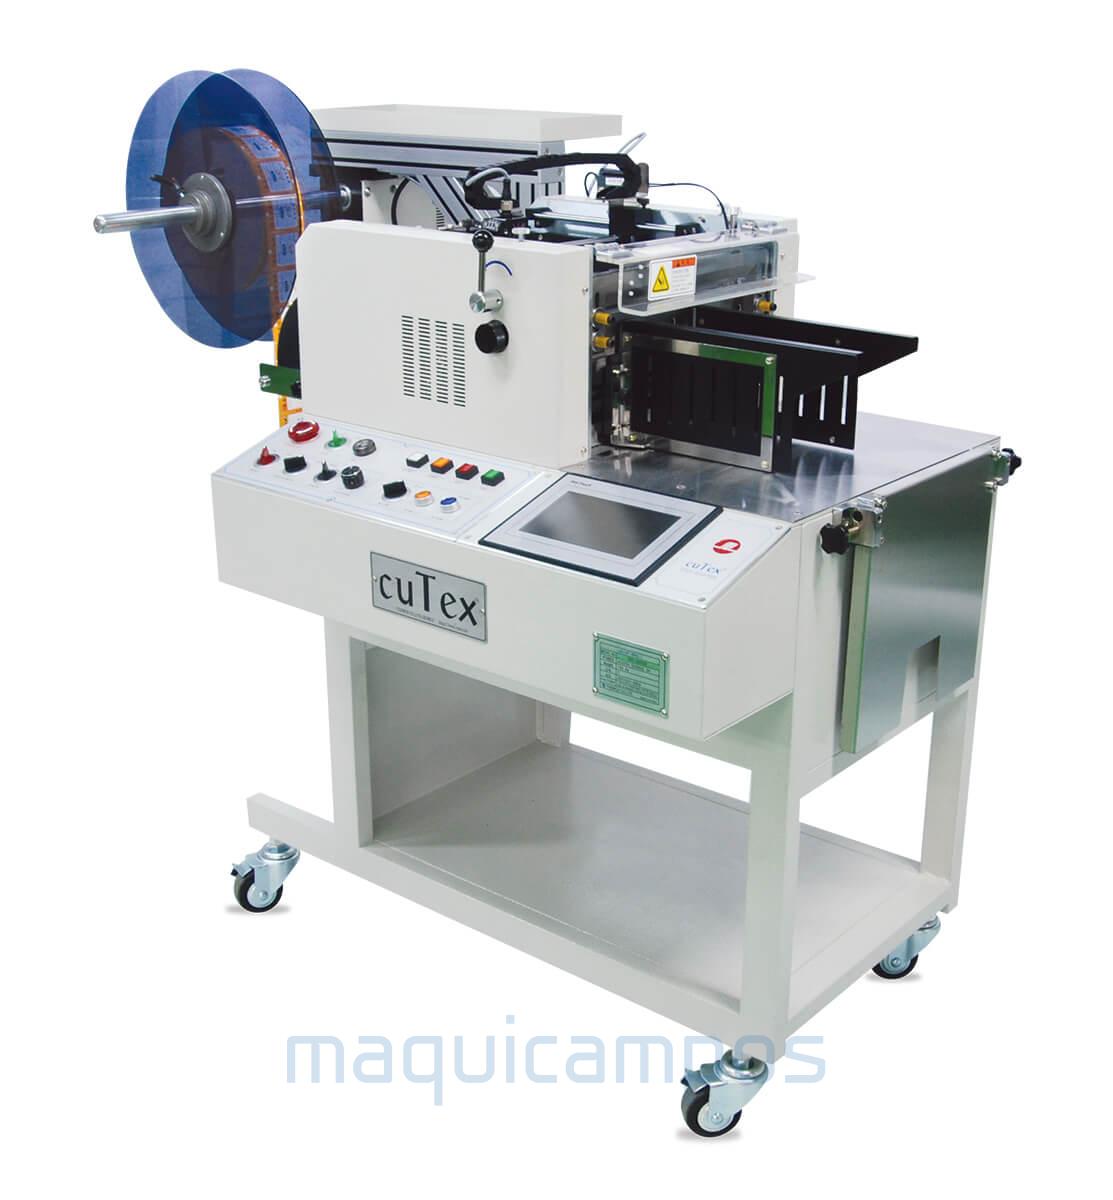 Cutex TFC-310TS4 High Speed Cold Cutting Machine